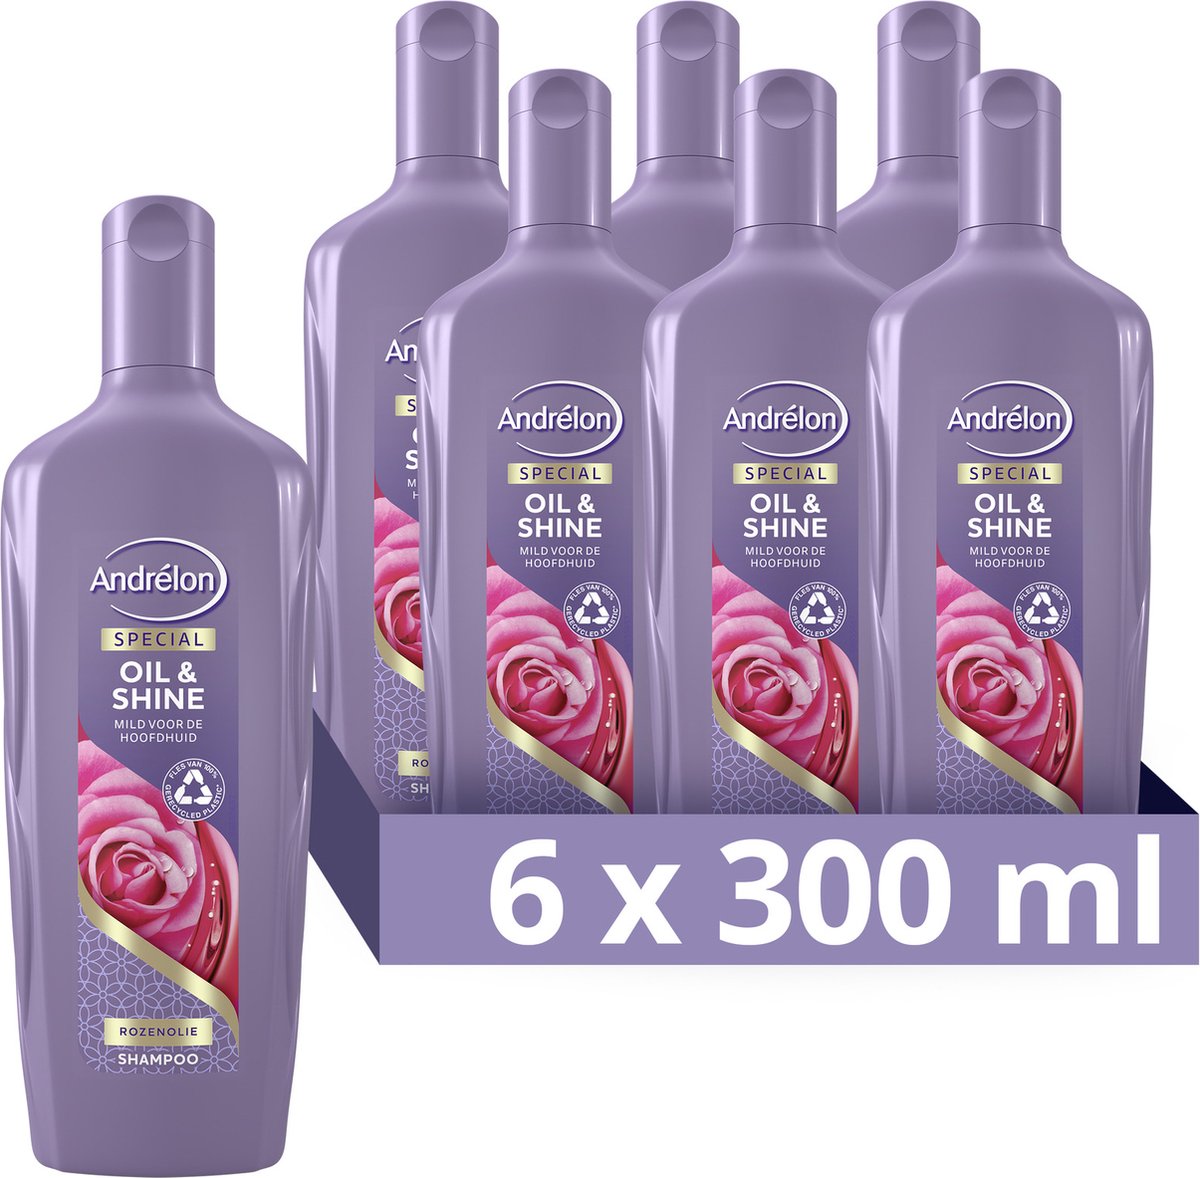 Andrélon Oil & Shine Special Shampoo - 6 x 300 ml - Voordeelverpakking